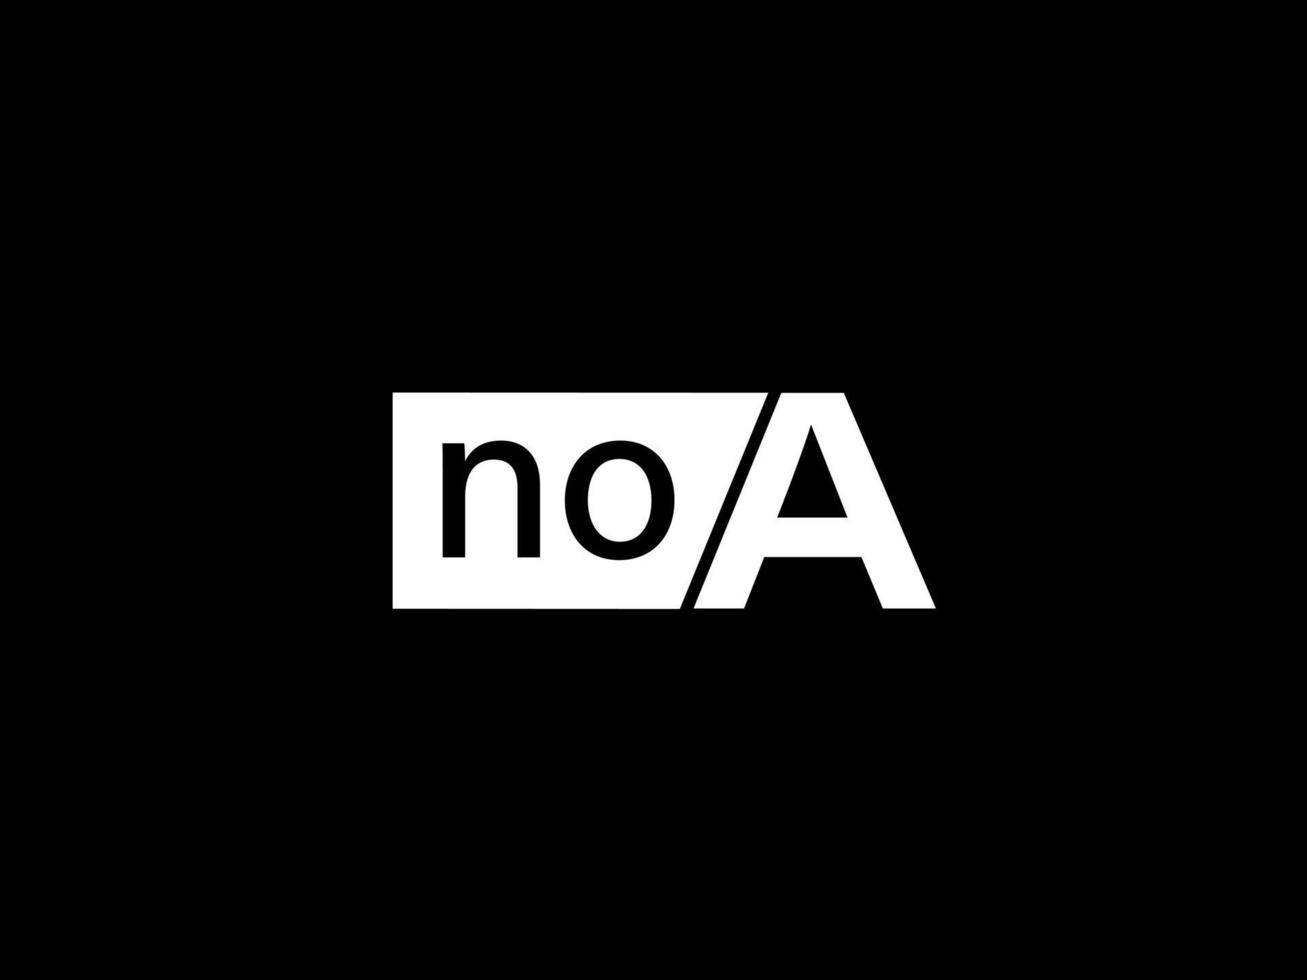 Noa-Logo und Grafikdesign Vektorgrafiken, Symbole isoliert auf schwarzem Hintergrund vektor